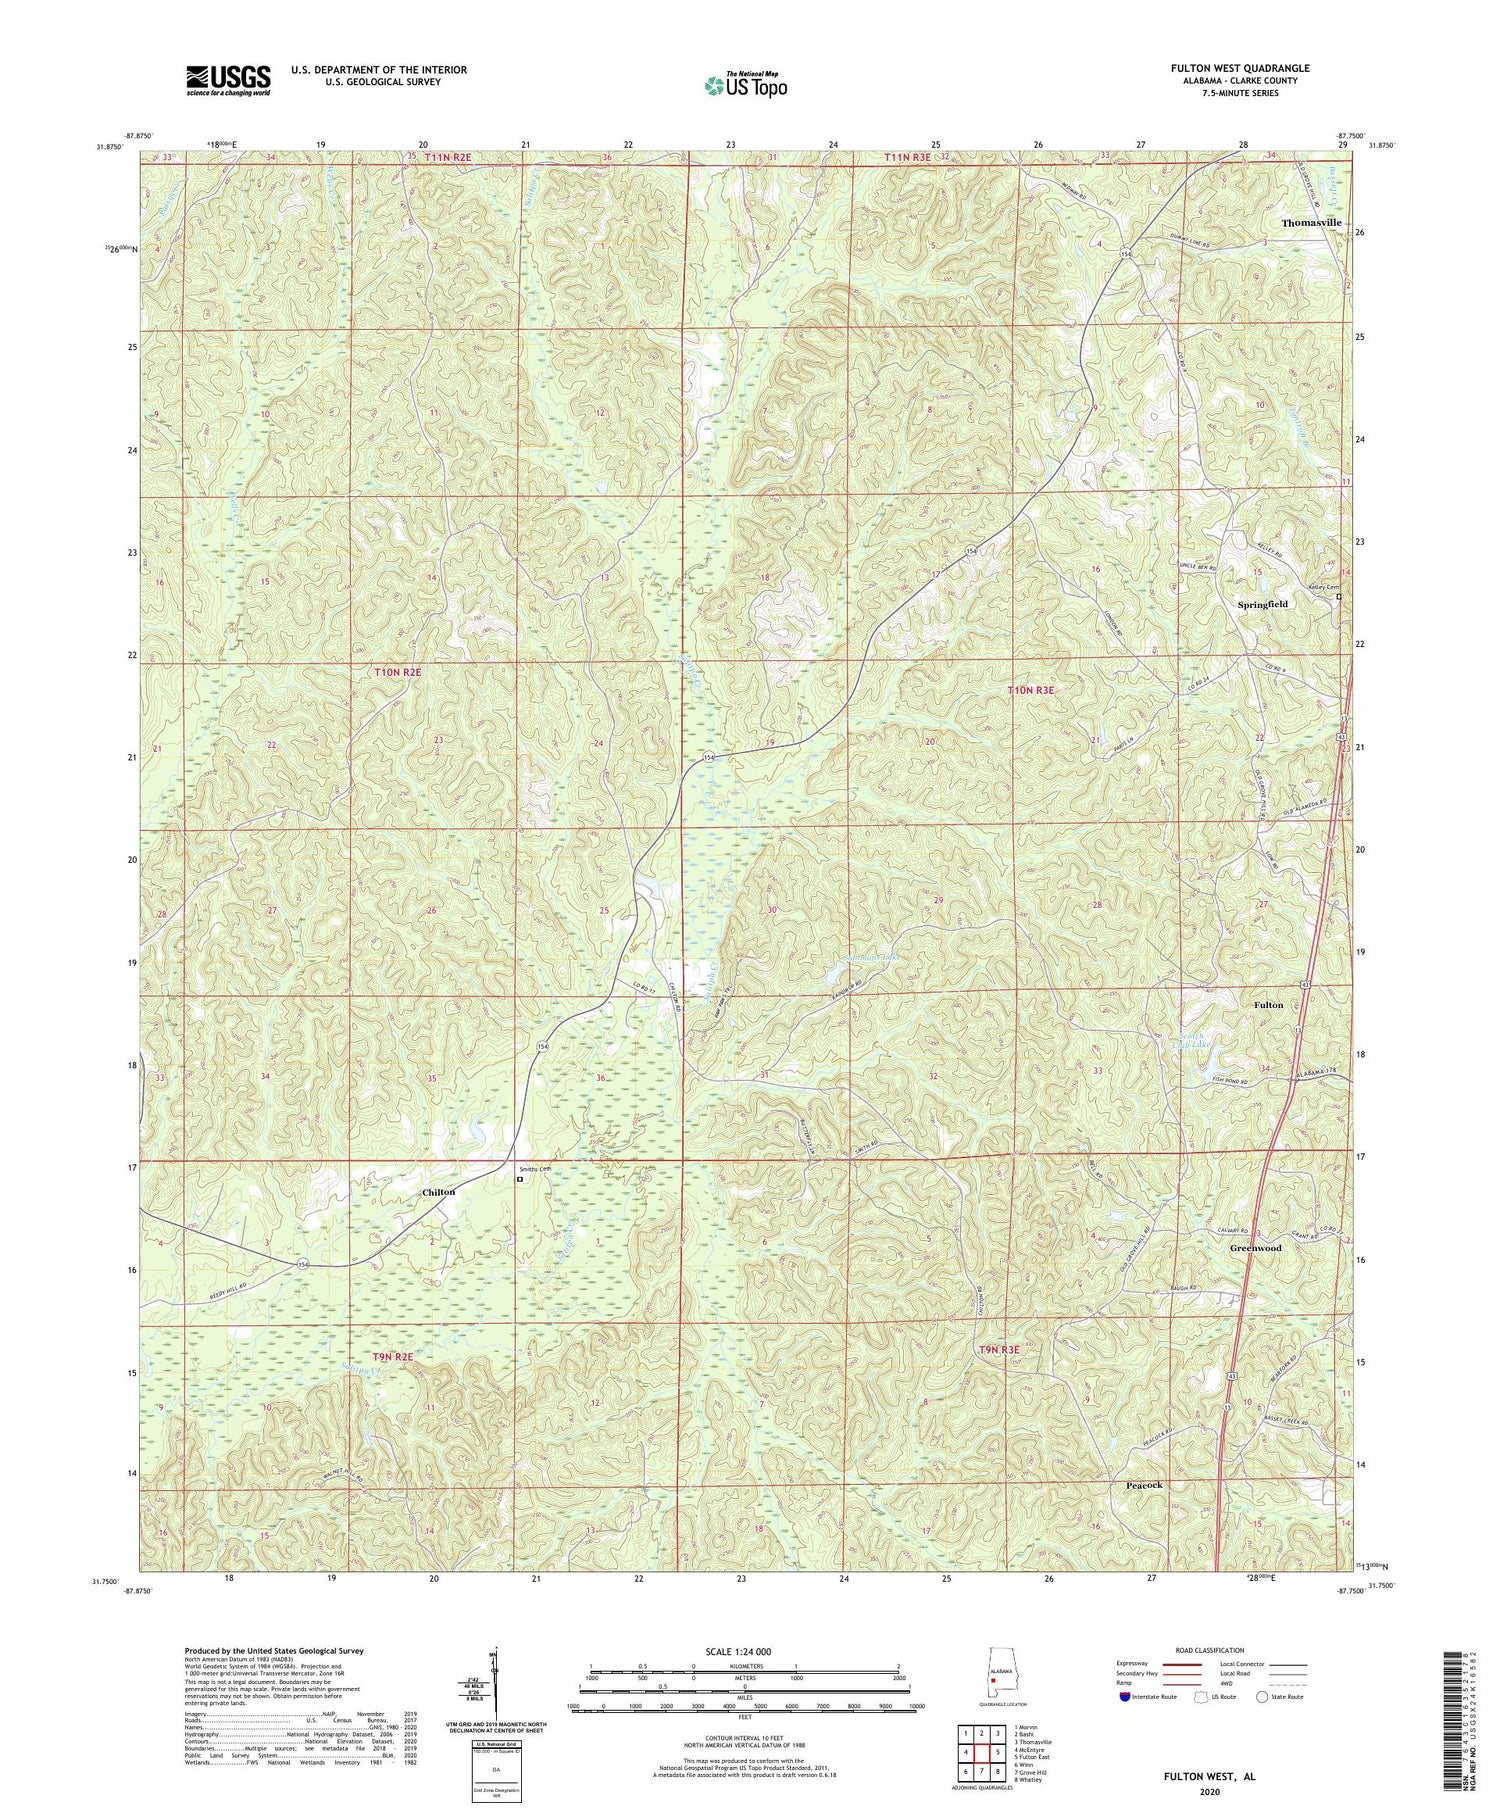 Fulton West Alabama US Topo Map Image